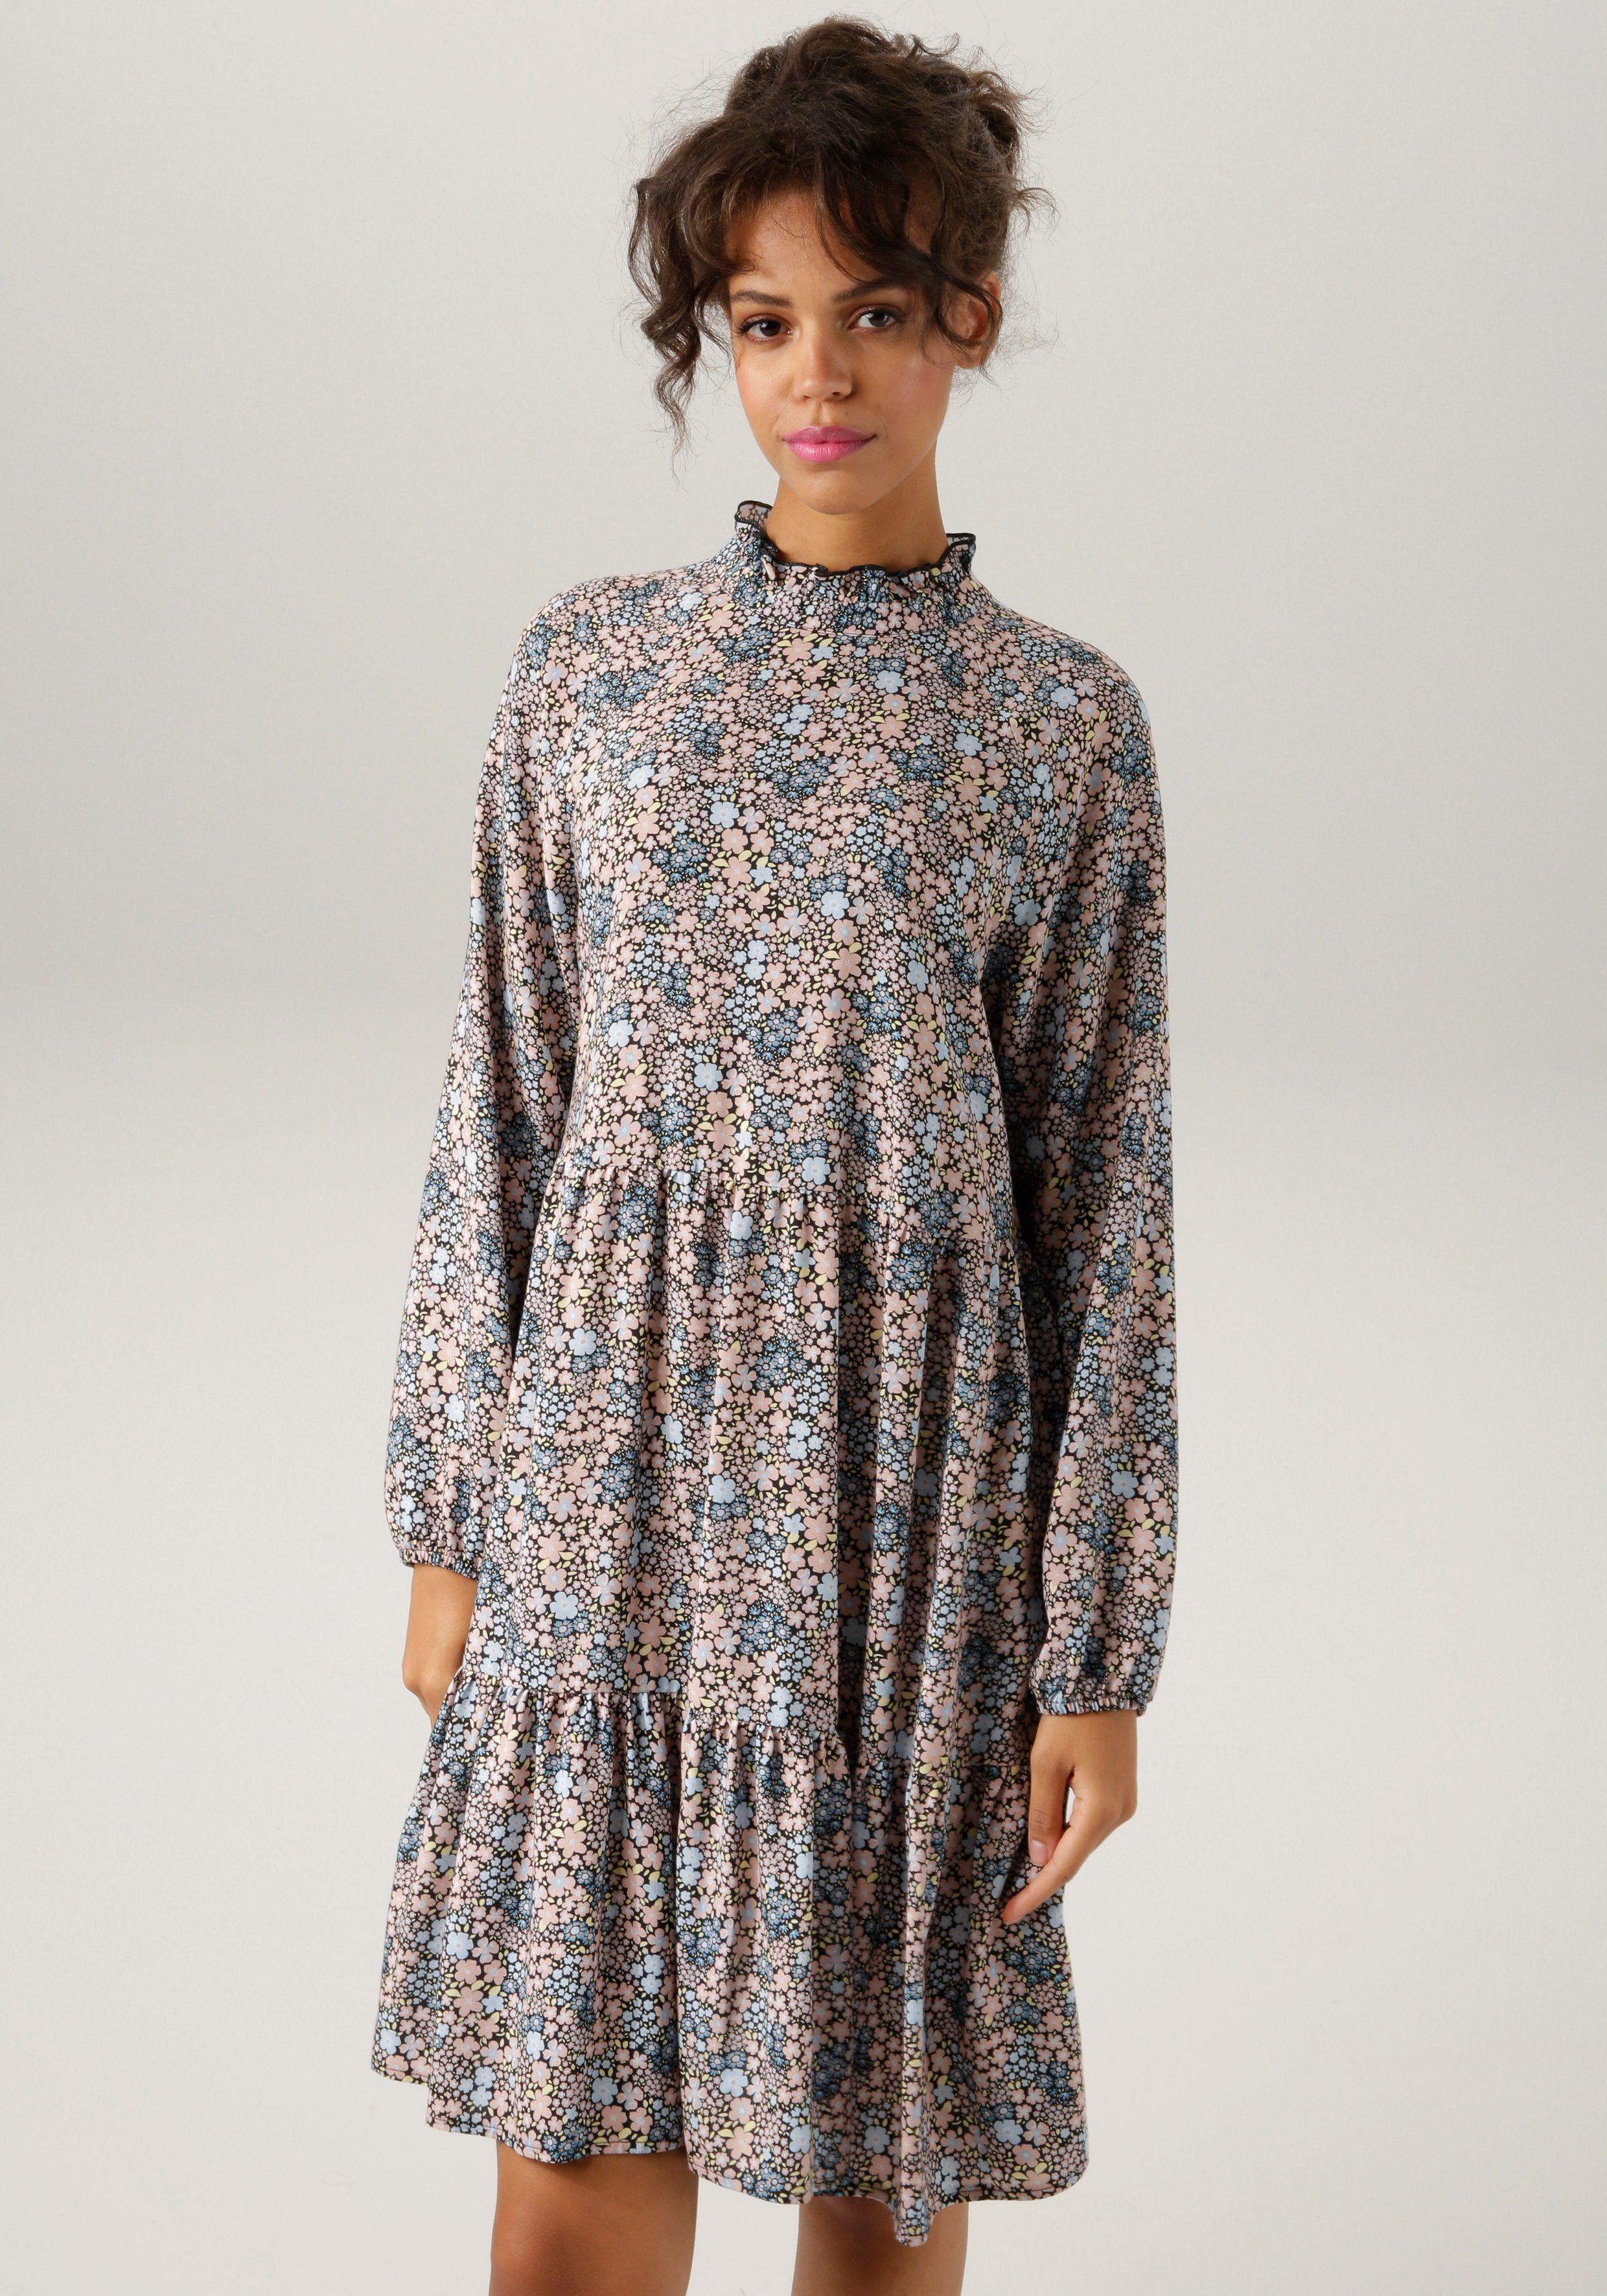 Viskose Sommerkleid online kaufen » Sommerliches Kleid | OTTO